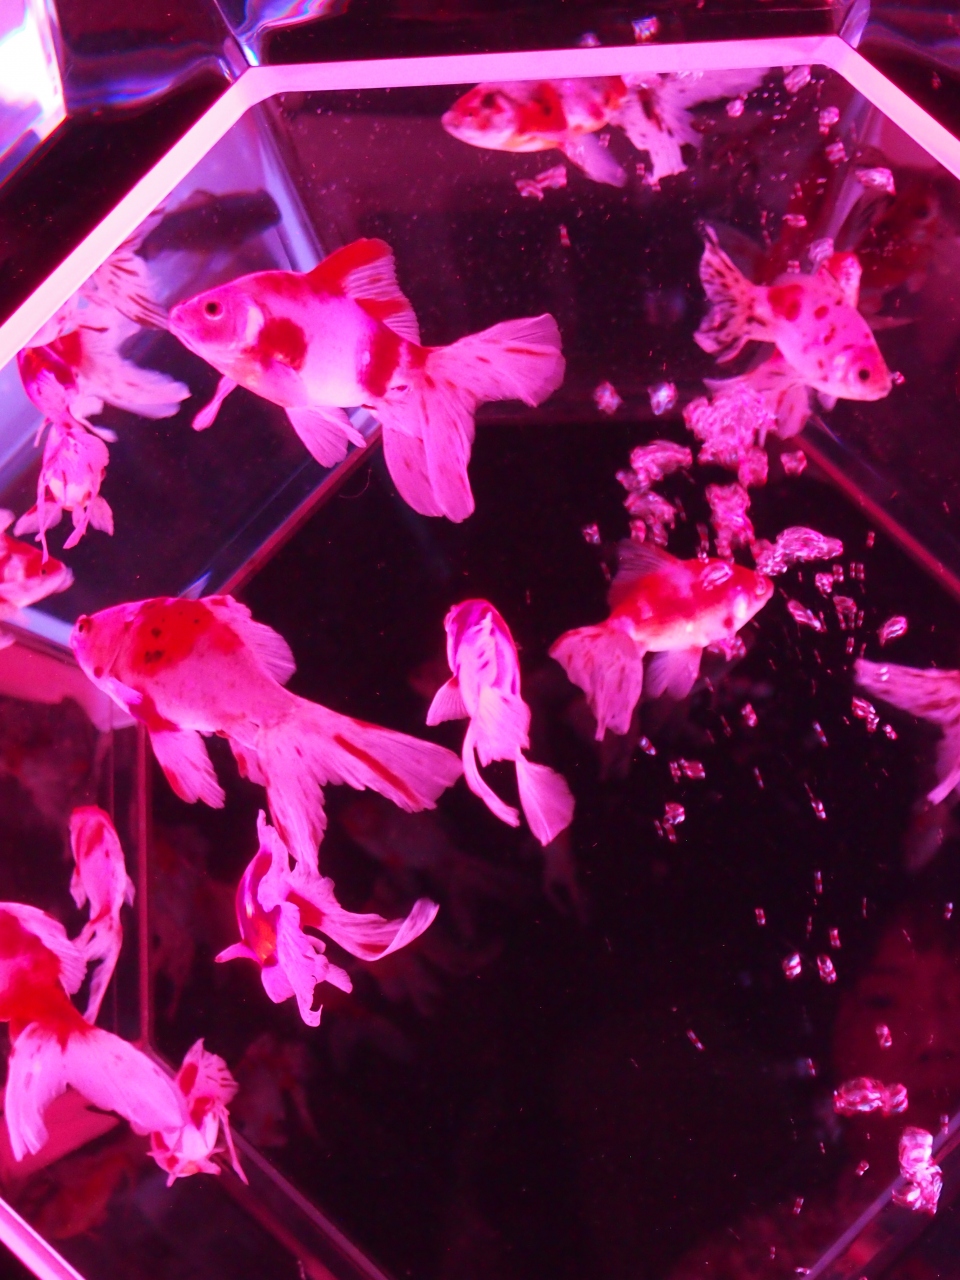 ２０１３ 東京の夏を涼もう 妖艶な金魚のartaquarium シャングリラホテルでafternoontea 日本橋 東京 の旅行記 ブログ By くまこさん フォートラベル